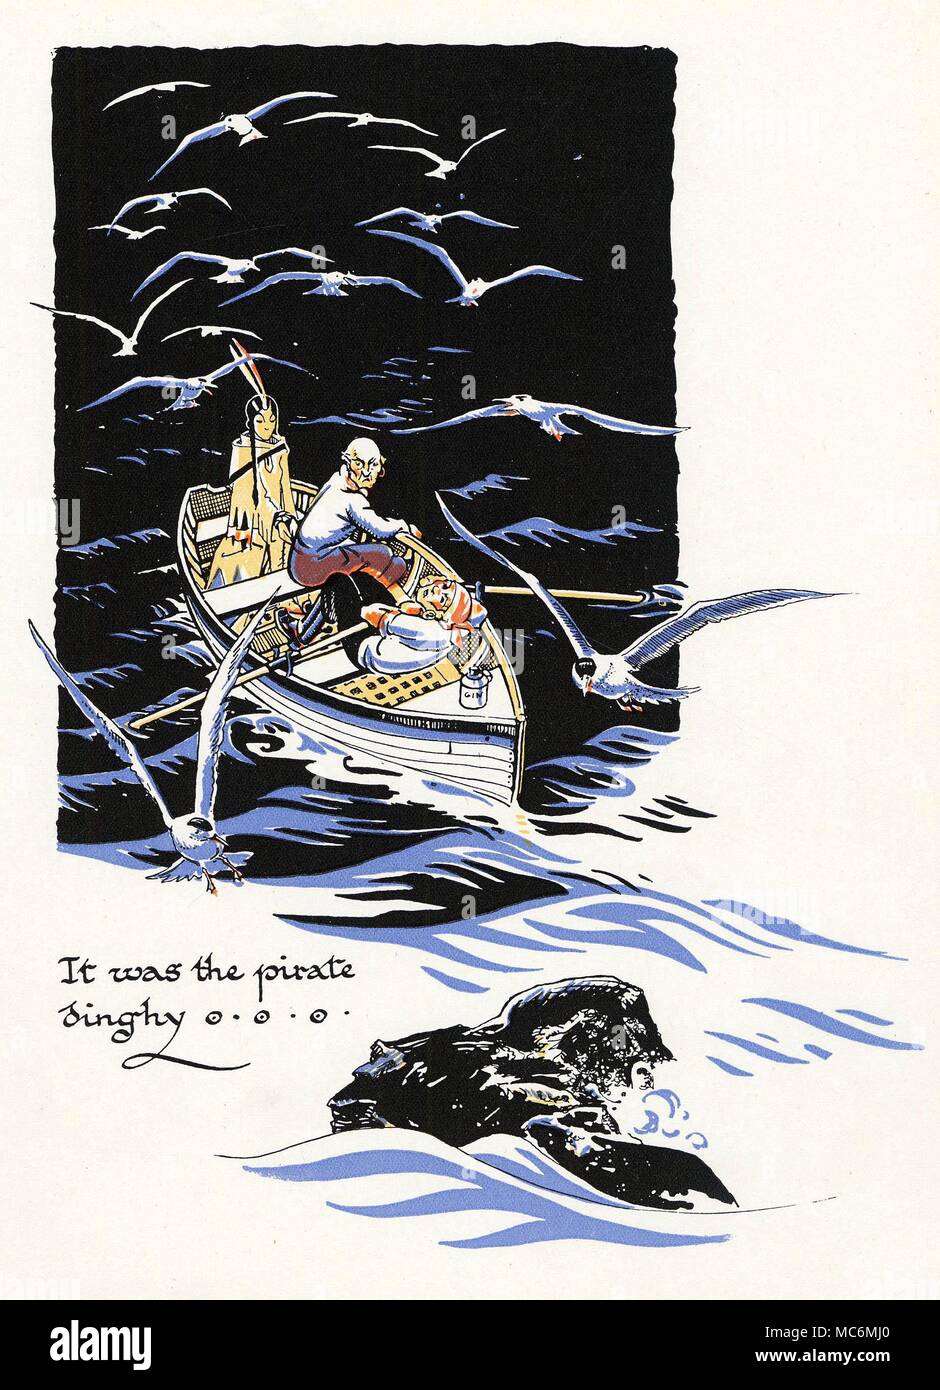 FAIRY TALES - PETER PAN illustrazione di Gwynedd M. Hudson, per J.M. Barrie Peter Pan e Wendy, nessuna data, ma circa 1930. "Era il pirata dinghy." i pirati arrivano, con Smee e Starkey, e loro captive, Tiger Lily. Foto Stock